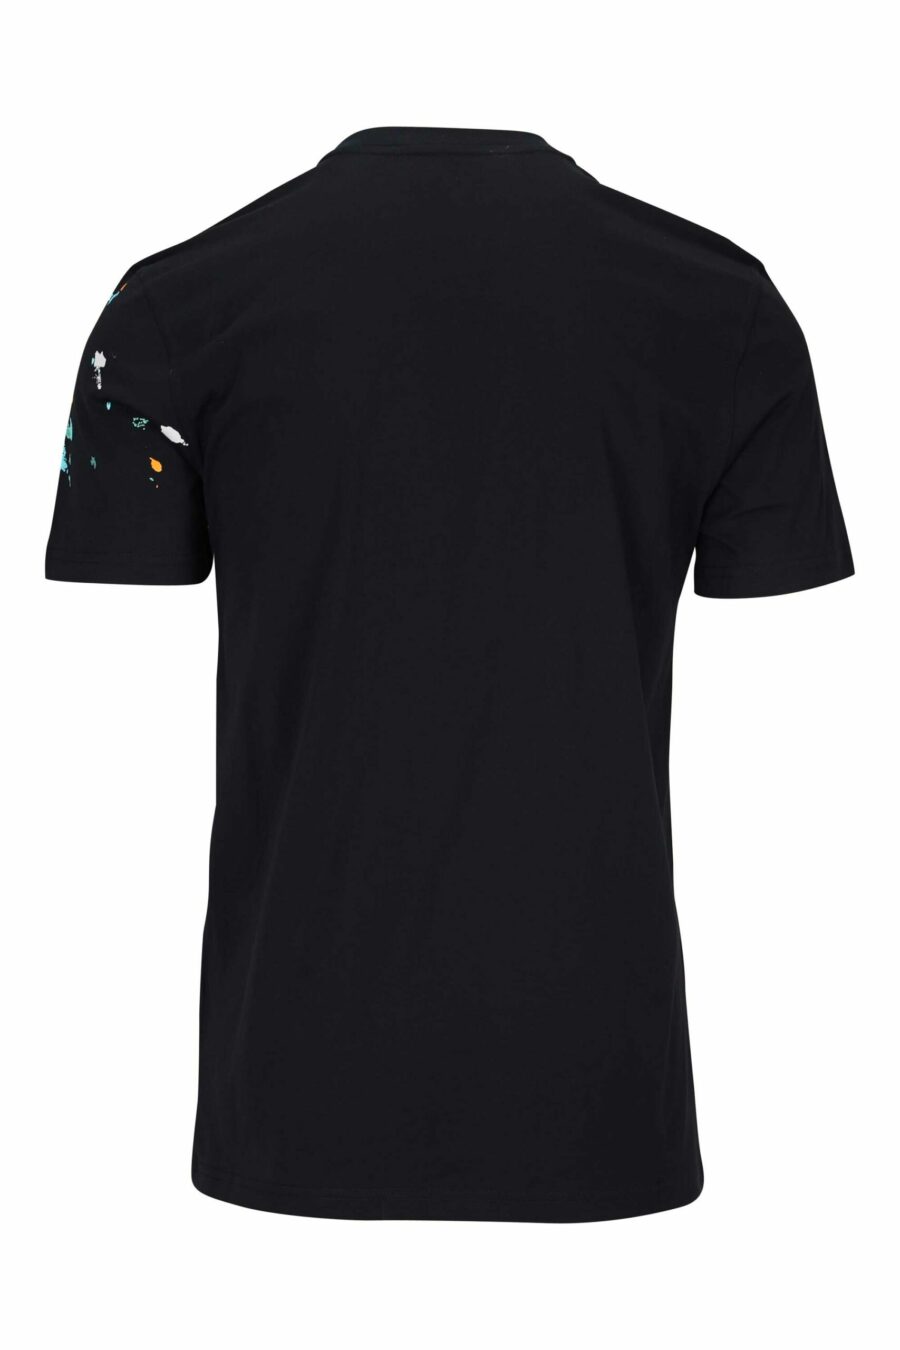 Camiseta negra con maxilogo "couture milano" con "splash" multicolor - 667113391946 1 scaled